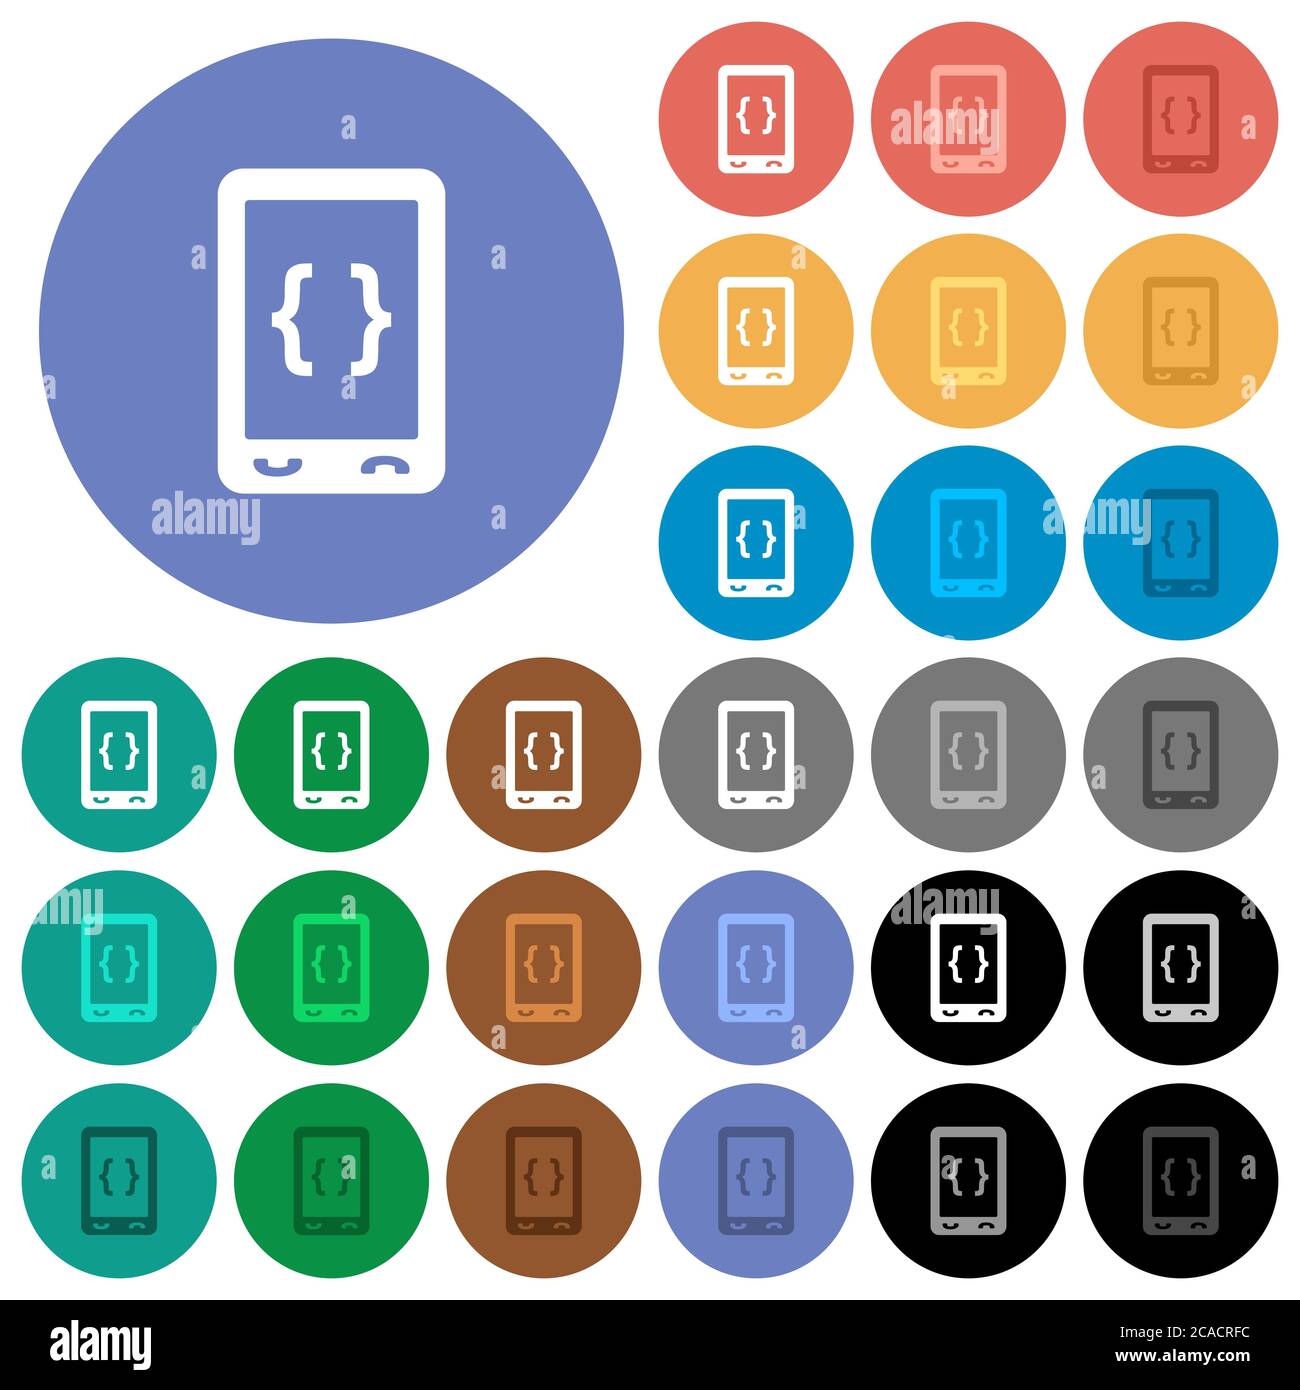 Développement de logiciels mobiles icônes plates multicolores sur fond rond. Inclut des variantes d'icônes blanches, claires et sombres pour les États de survol et d'activité Illustration de Vecteur